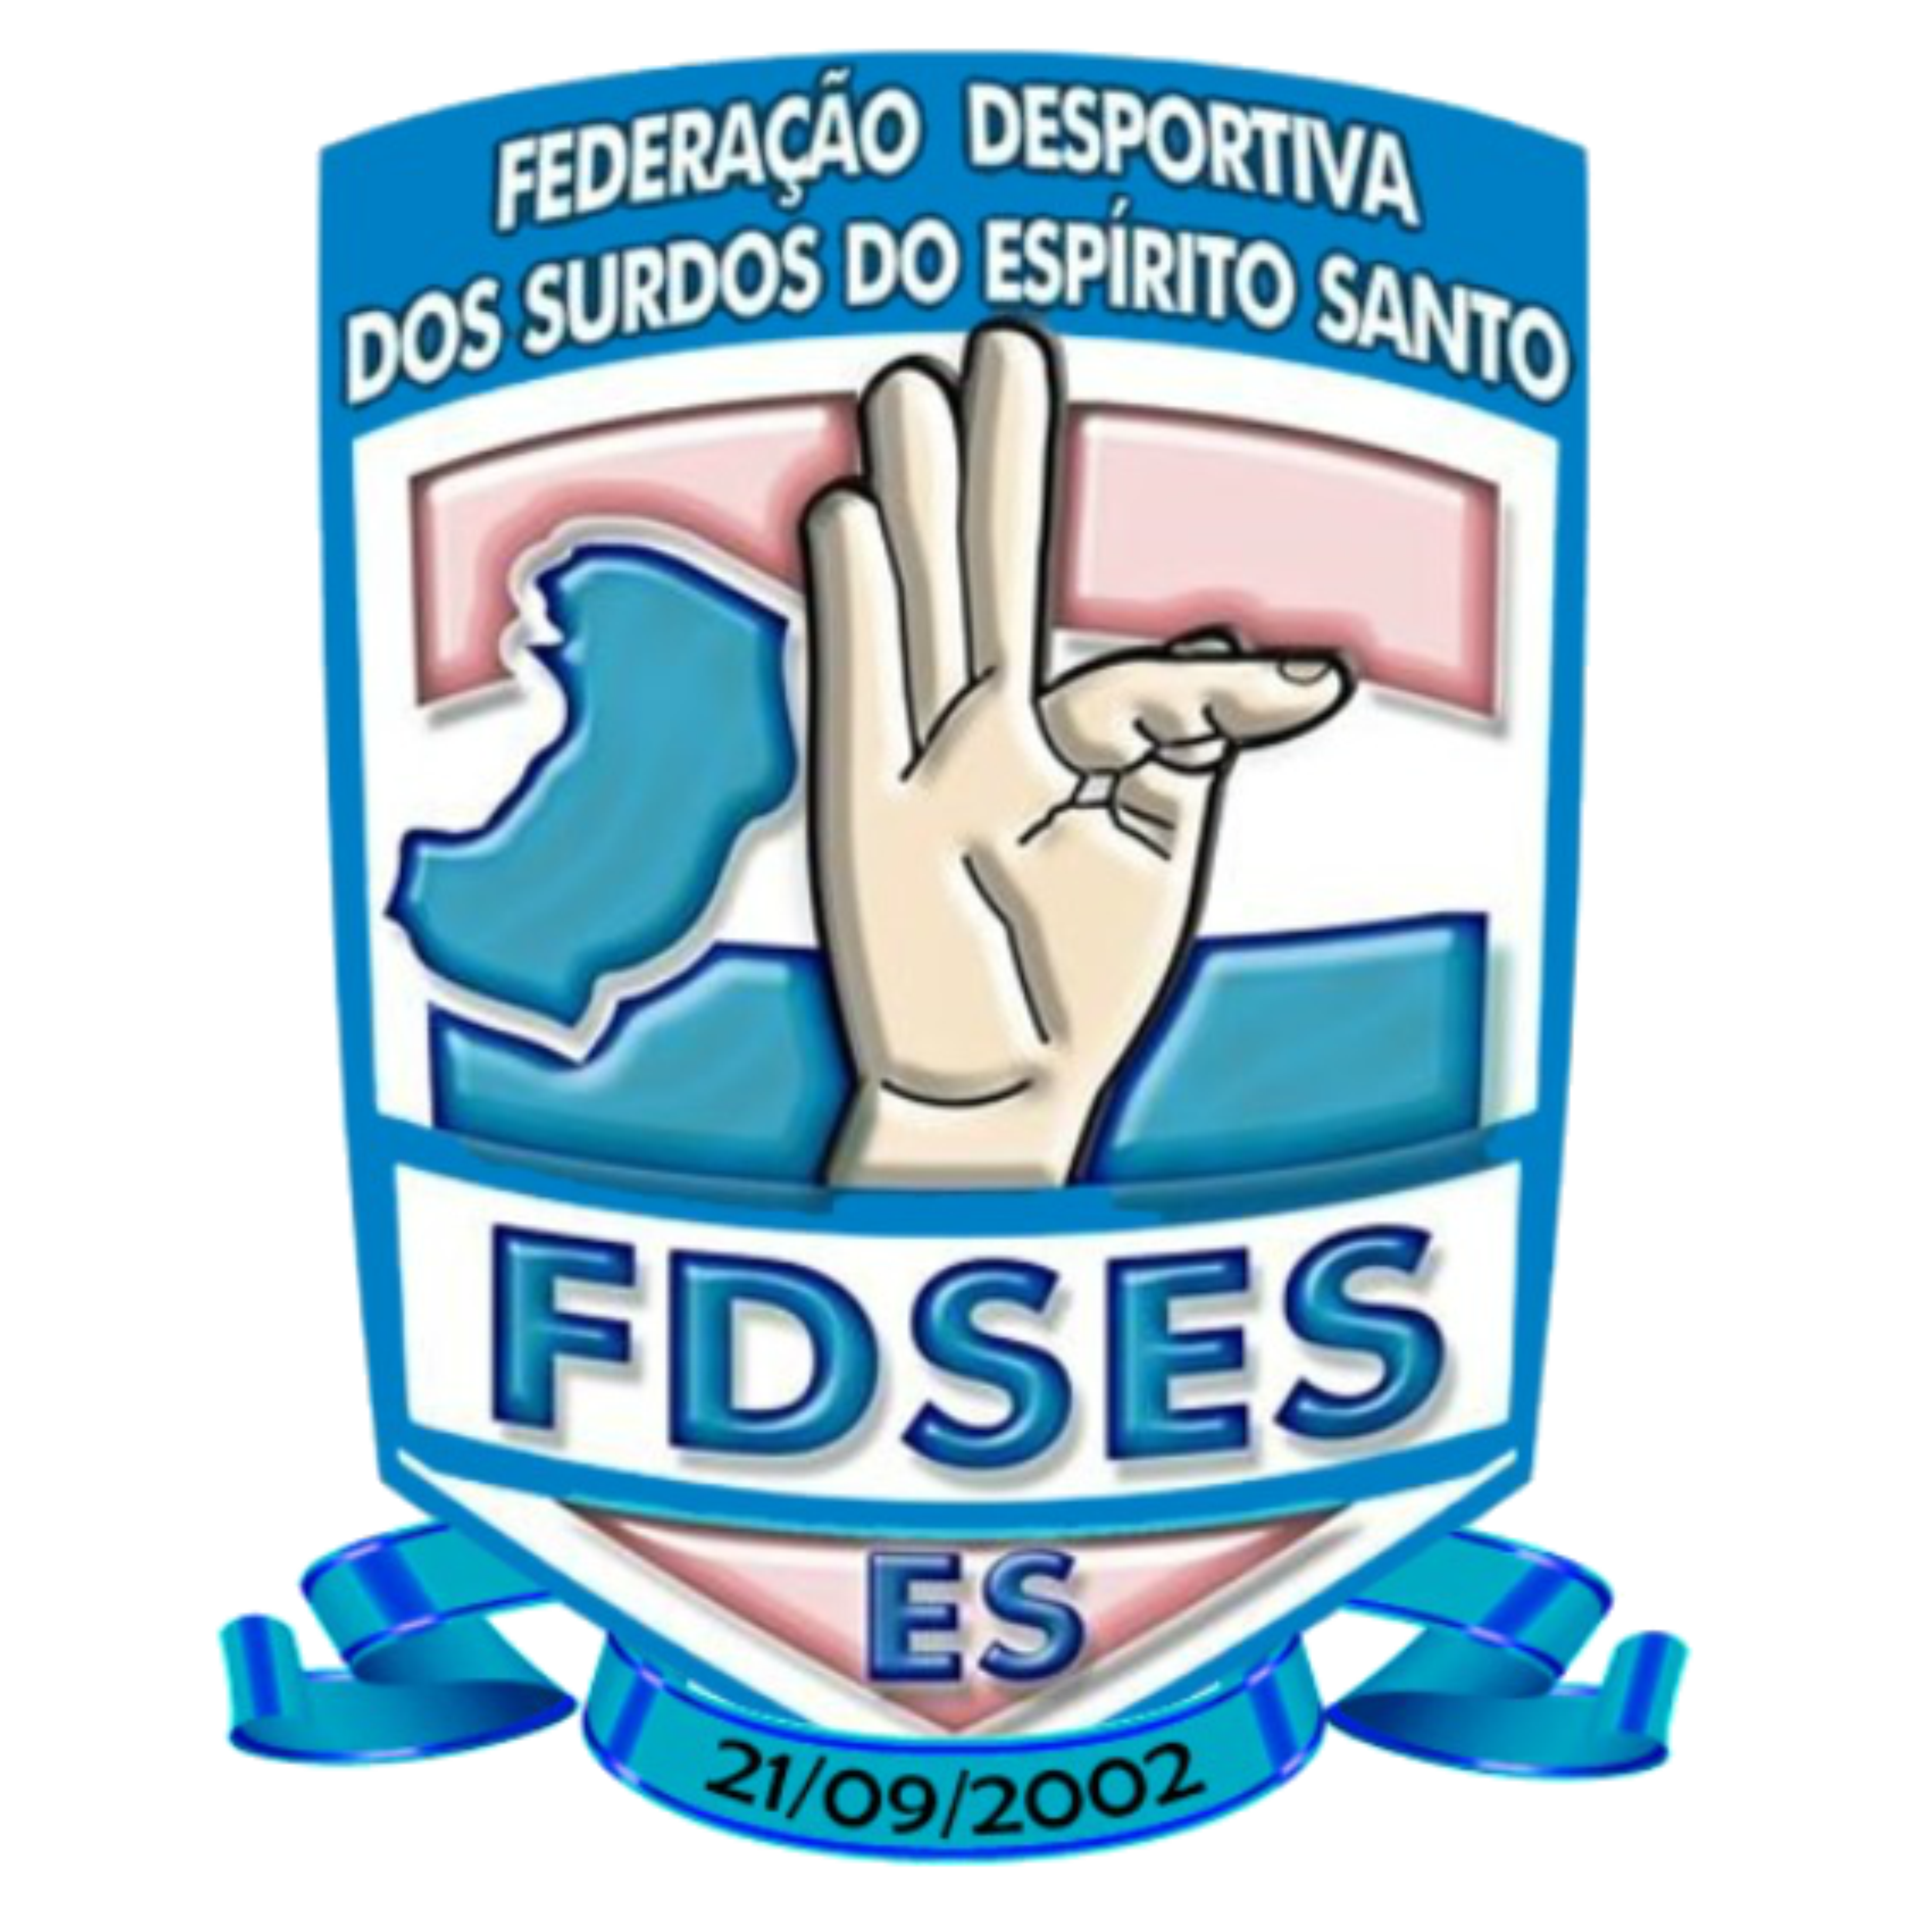 FDSES - Federação Desportiva dos Surdos do Estado do Espírito Santo